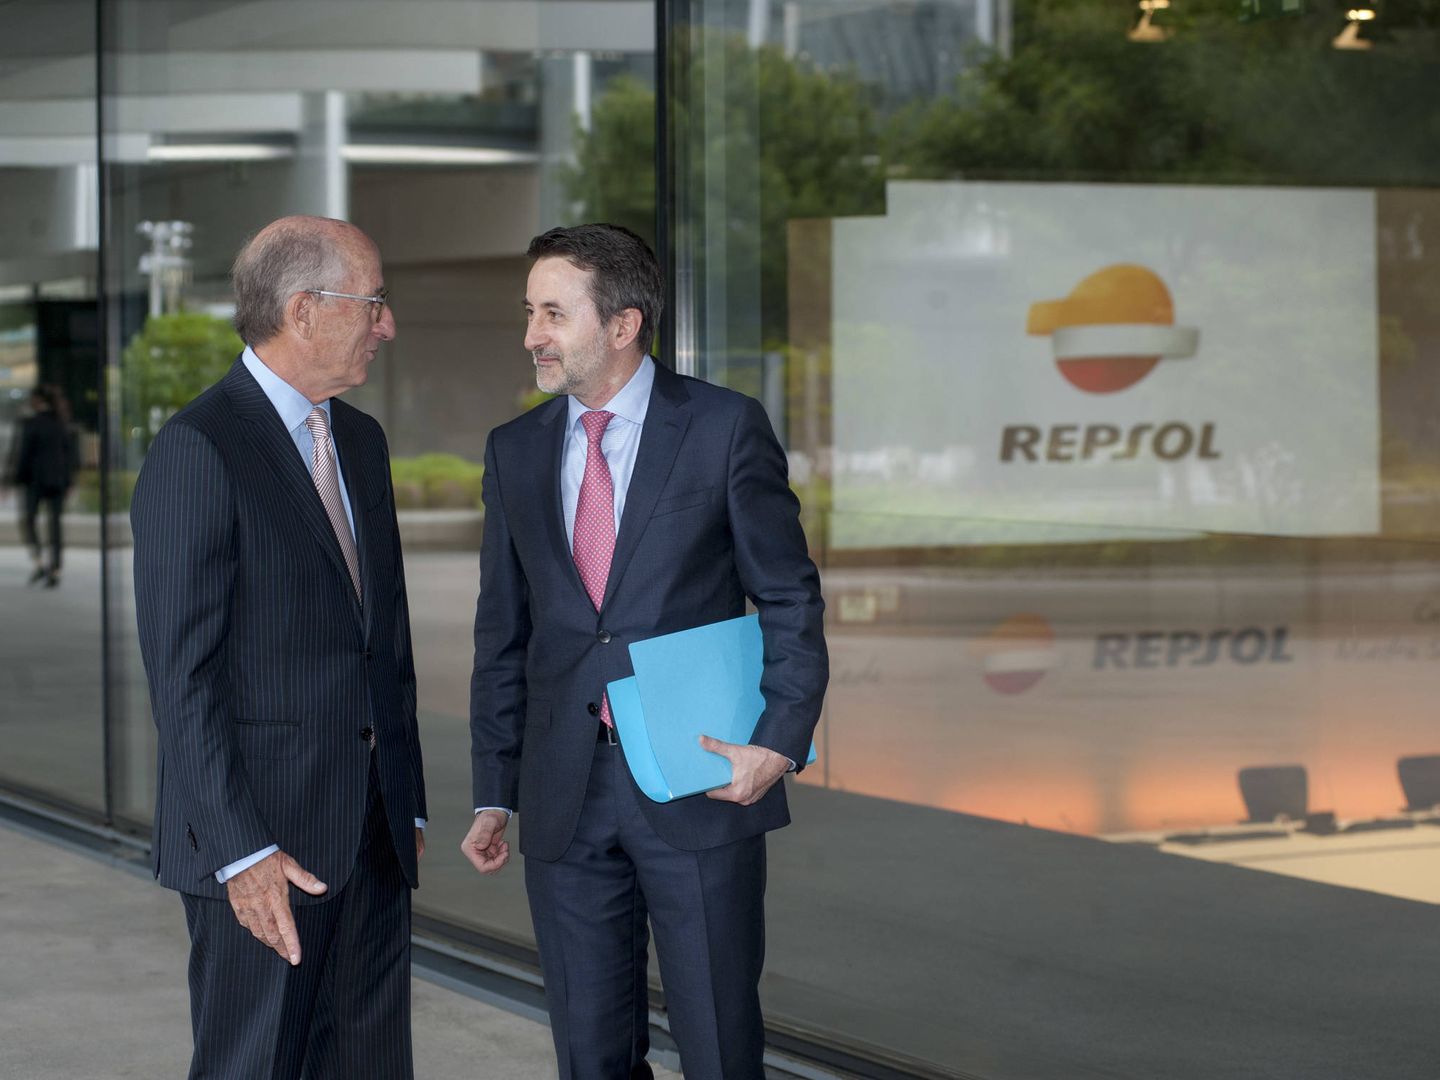 El presidente de Repsol, Antonio Brufau, junto al consejero delegado de la petrolera, Josu Jon Imaz, en la presentación del nuevo plan estratégico.